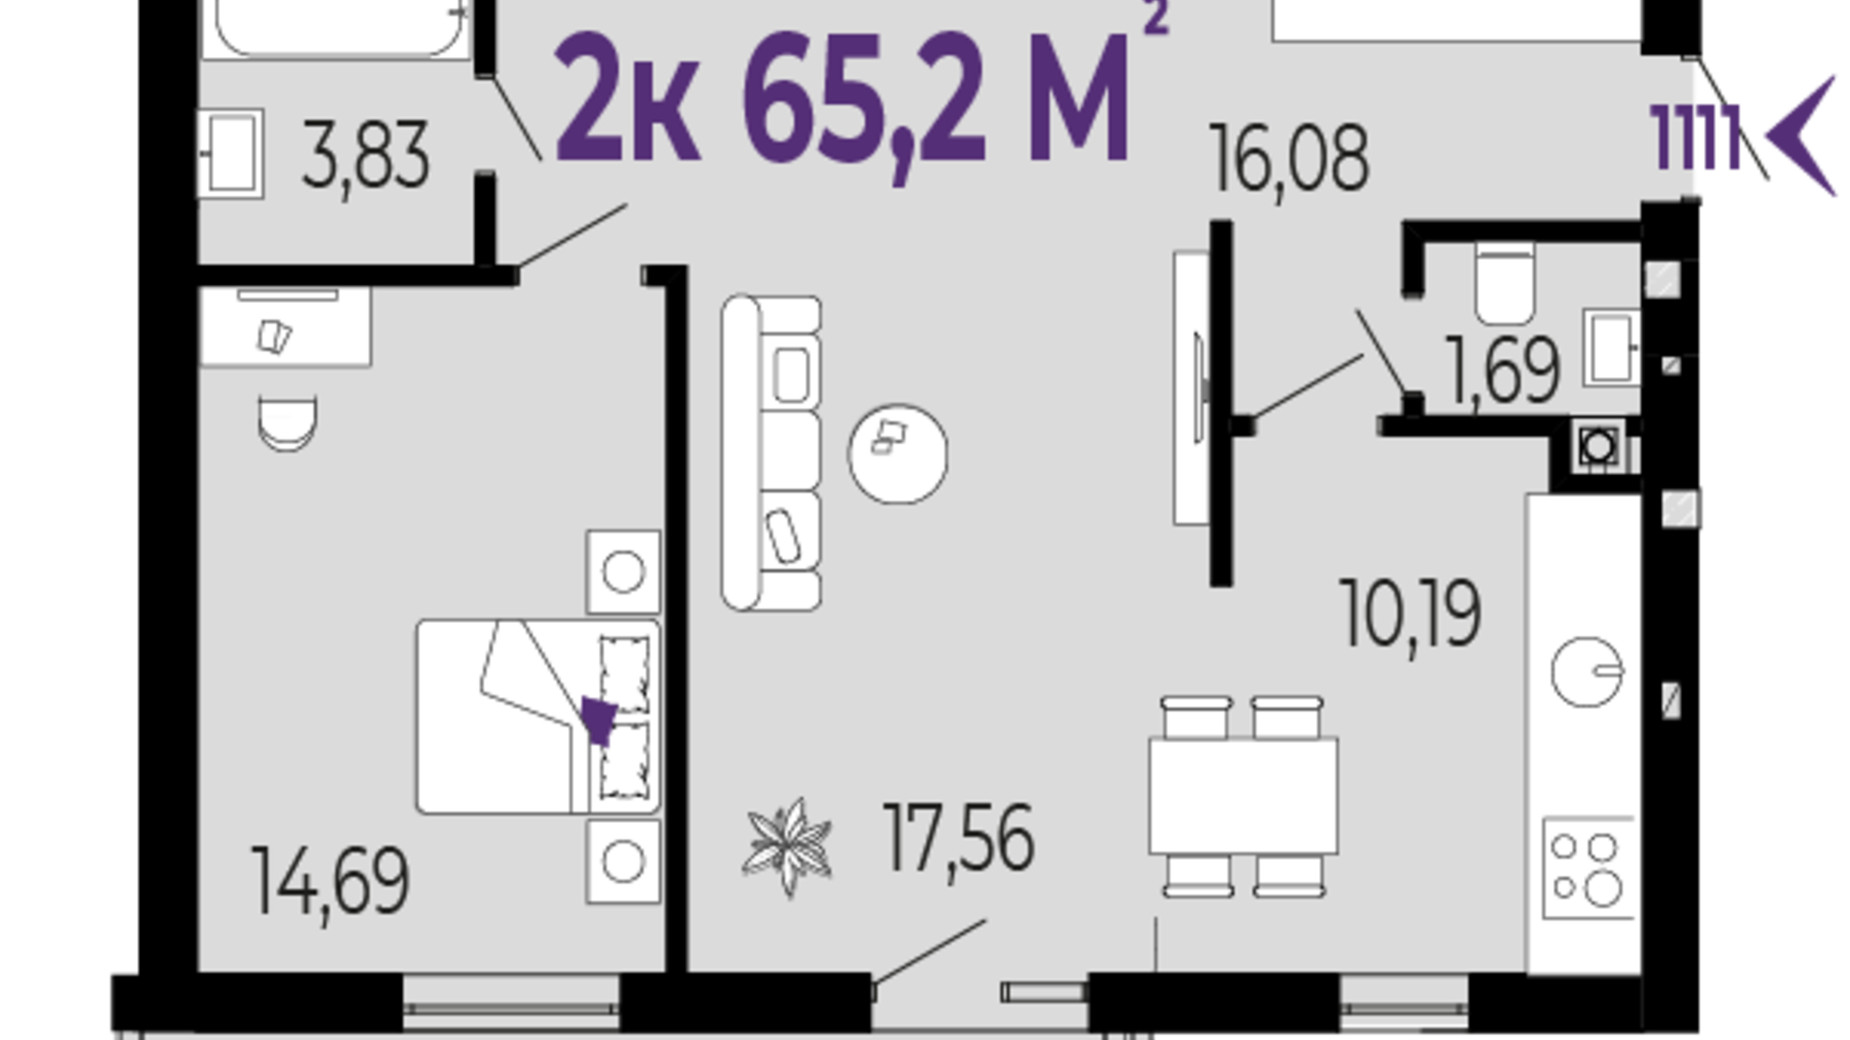 Планування 2-кімнатної квартири в ЖК Долішній 65.2 м², фото 589551